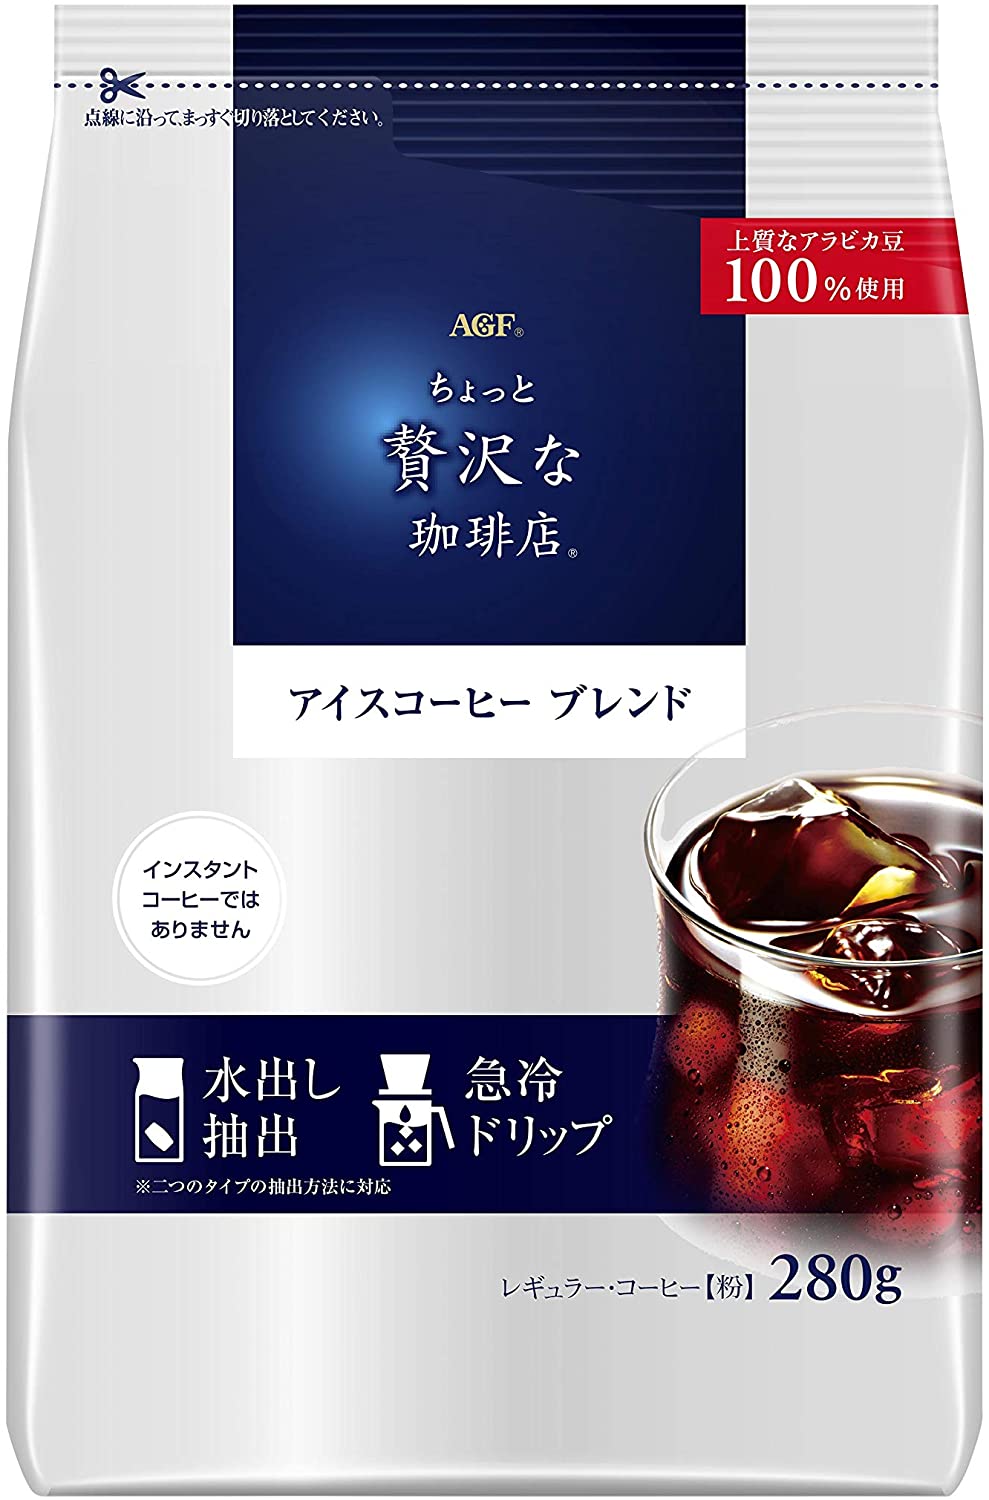 Японский кофе грубого помола Slightly Luxurious Coffee Iced Coffee Blend AGF, 280 гр